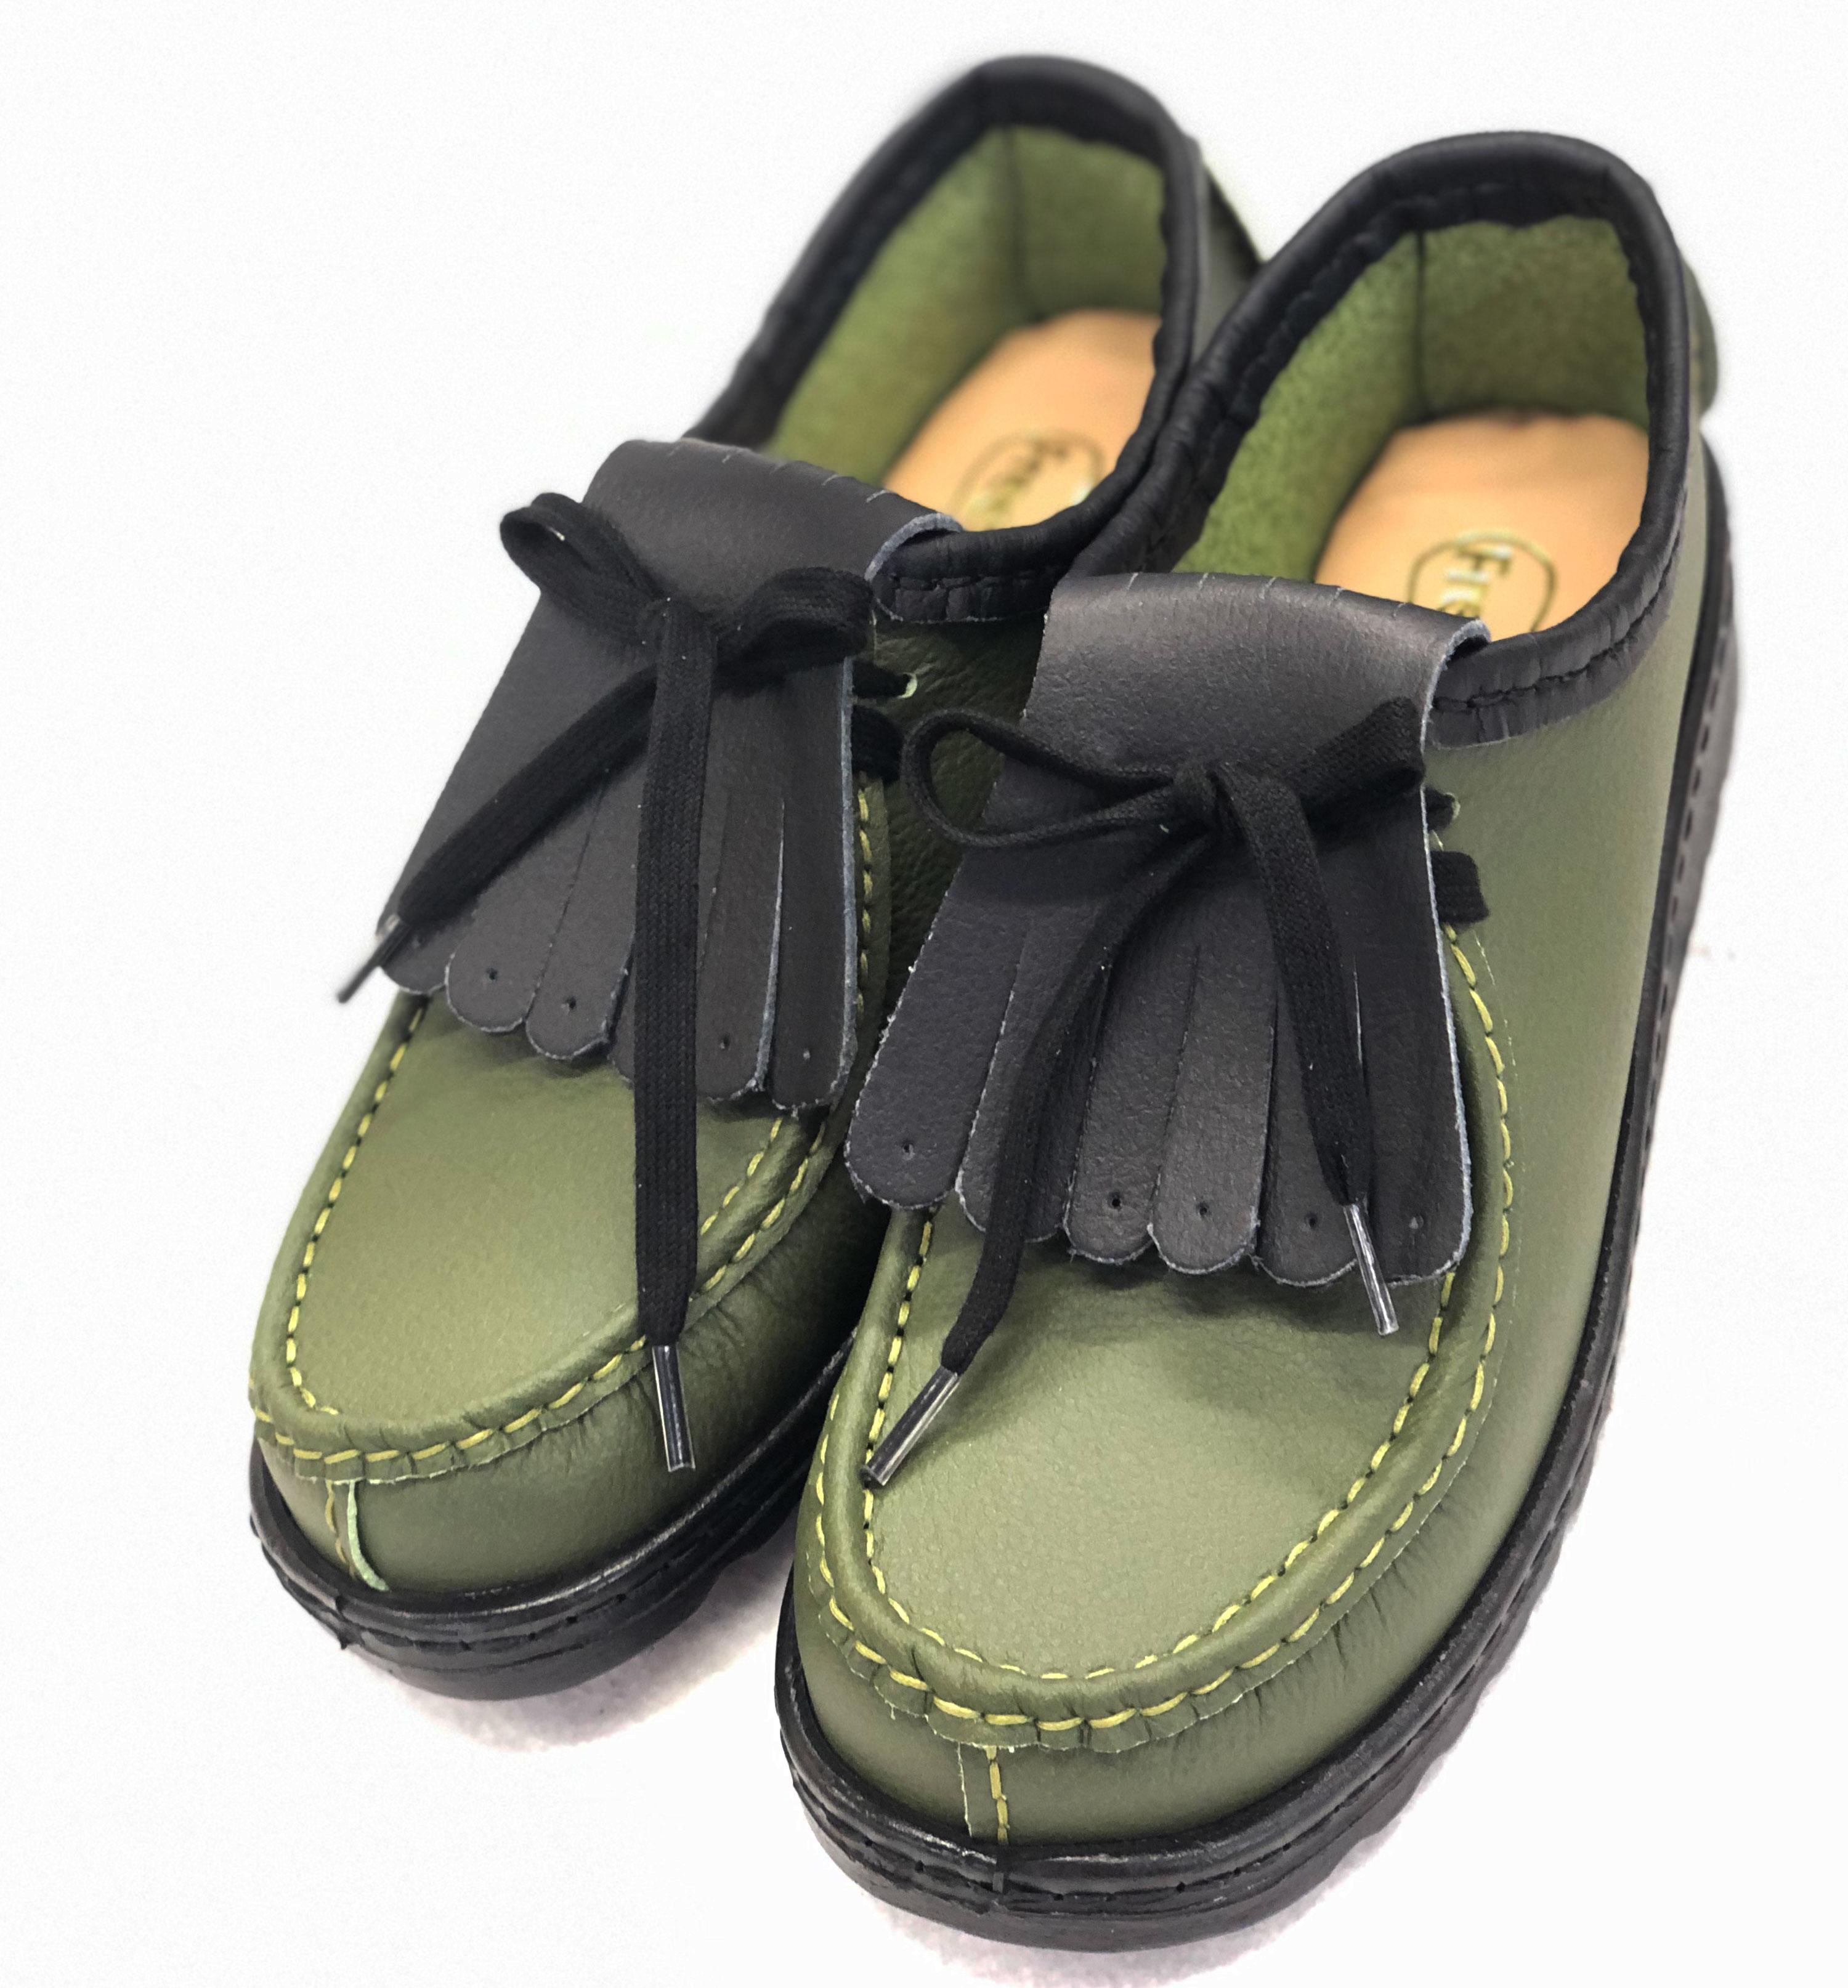 Holly Ladies Vegan Shoes - handmade in the UK